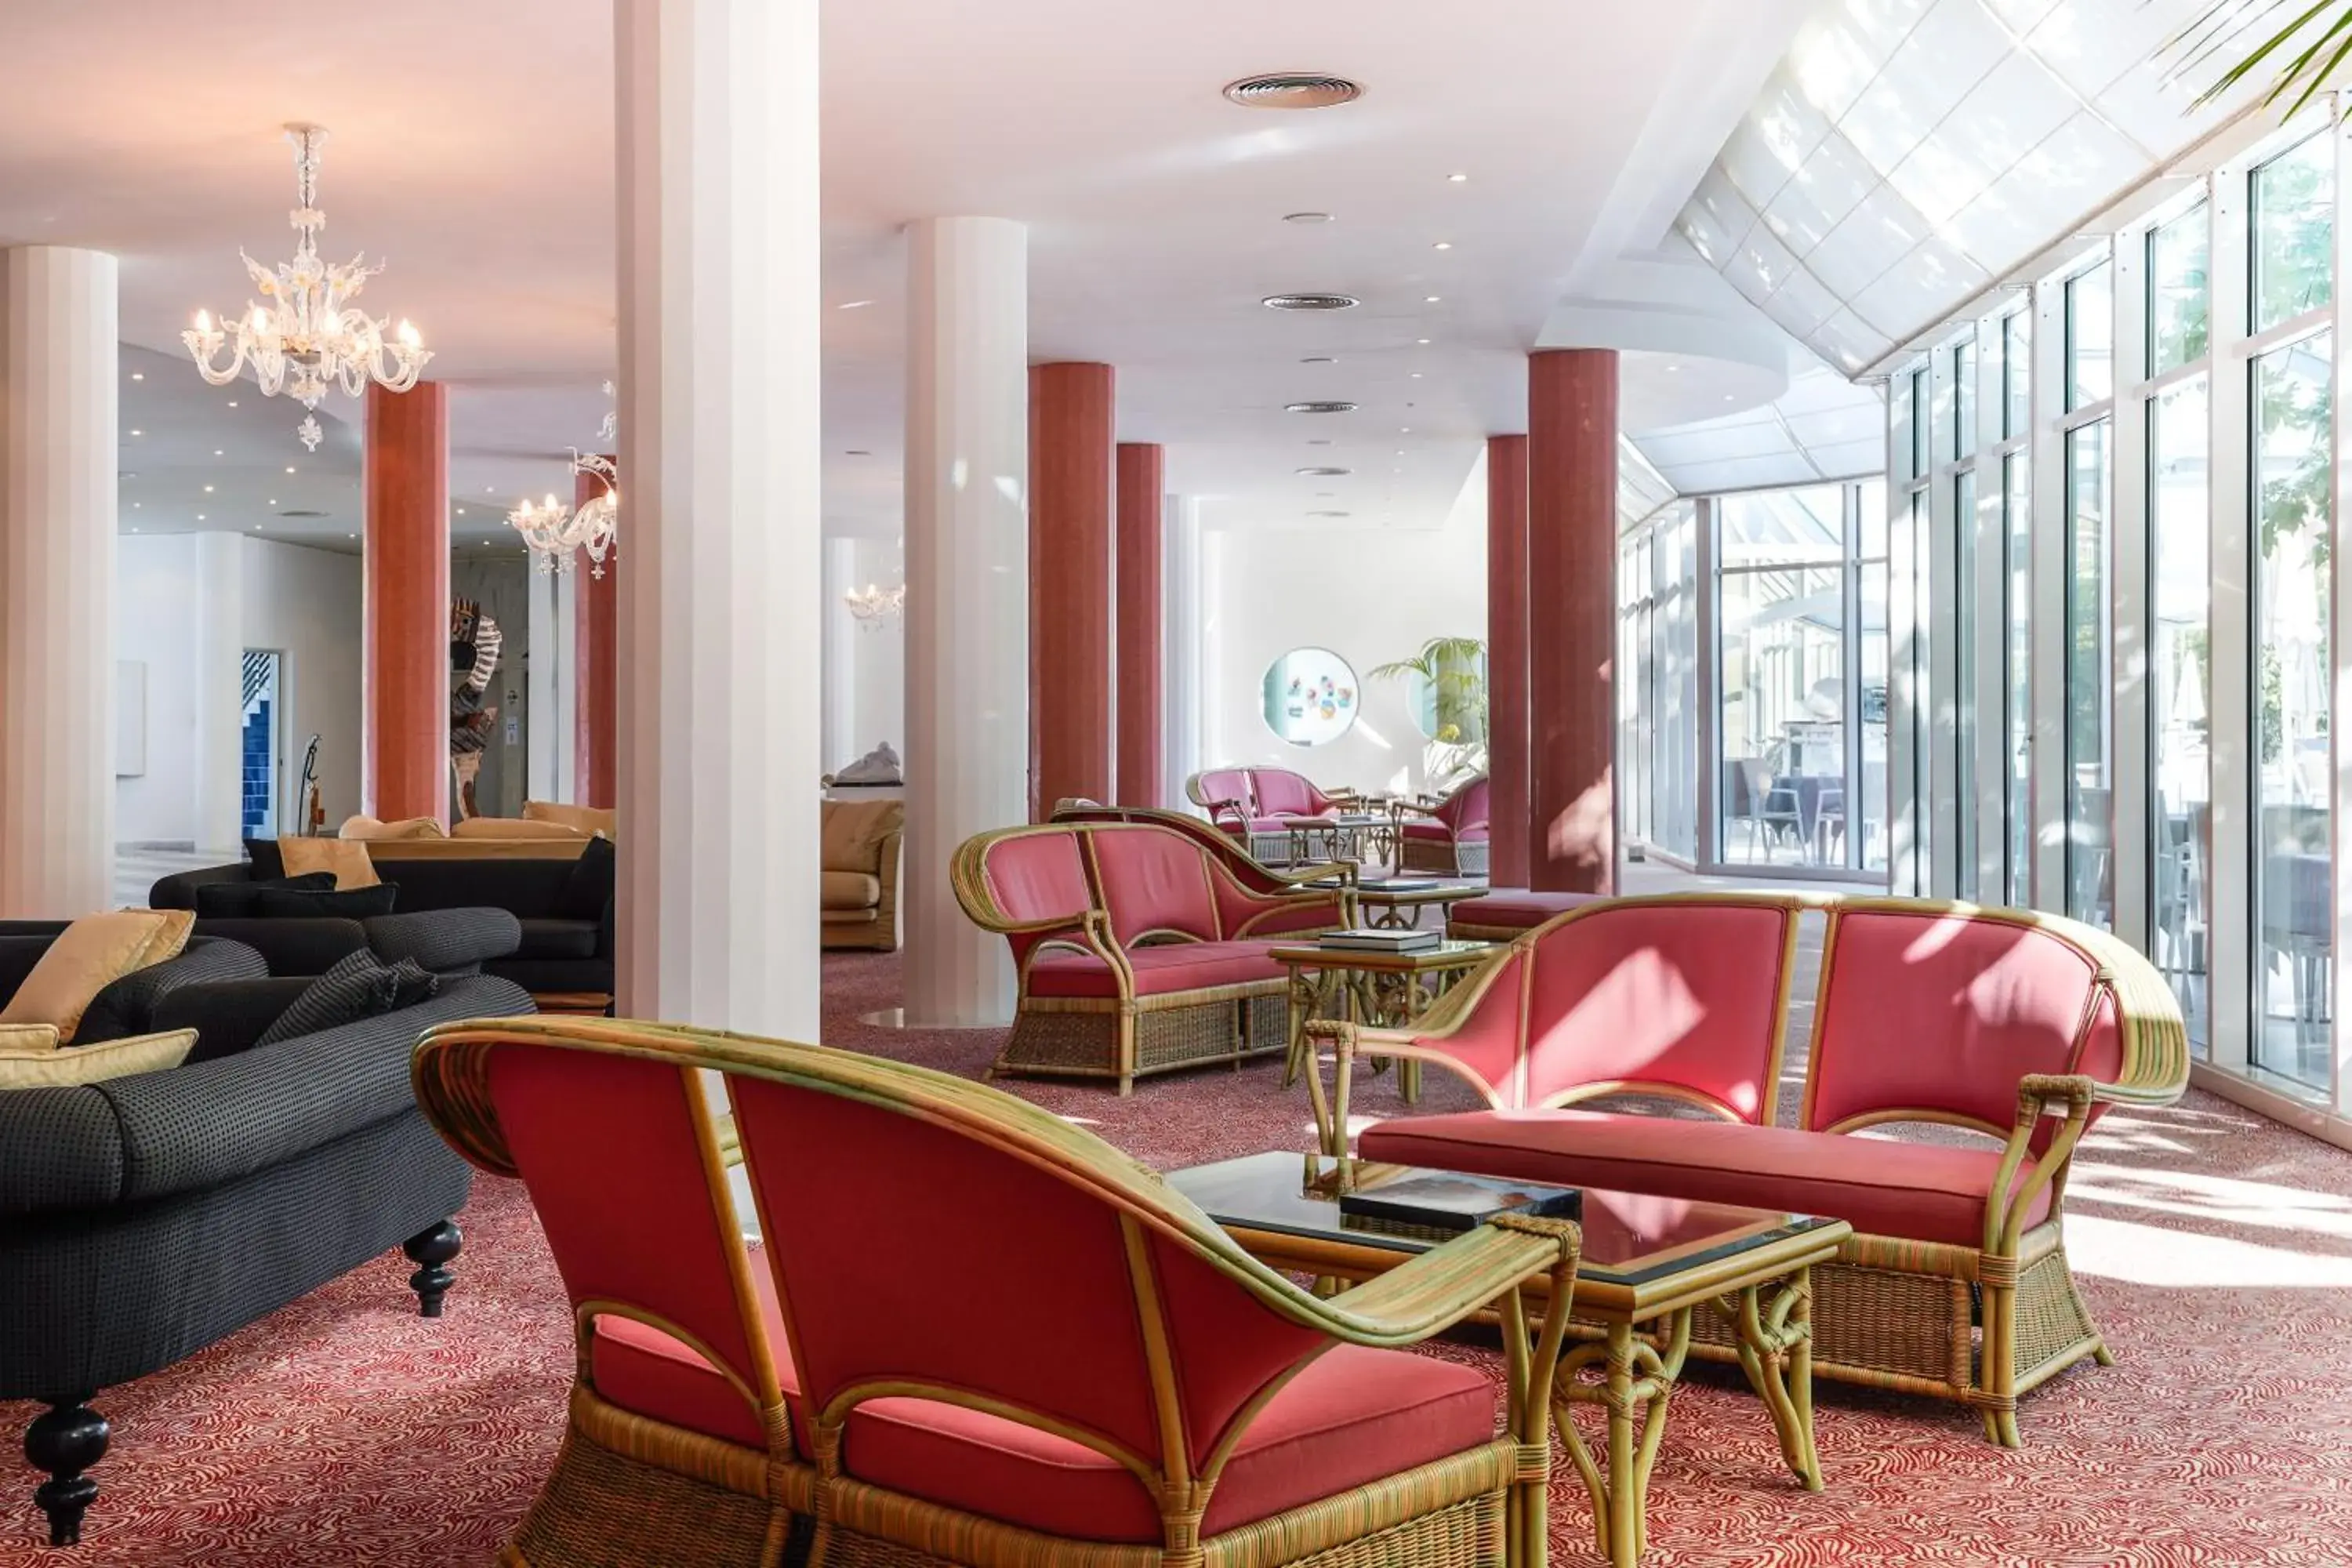 Lobby or reception in Hotel Savoy